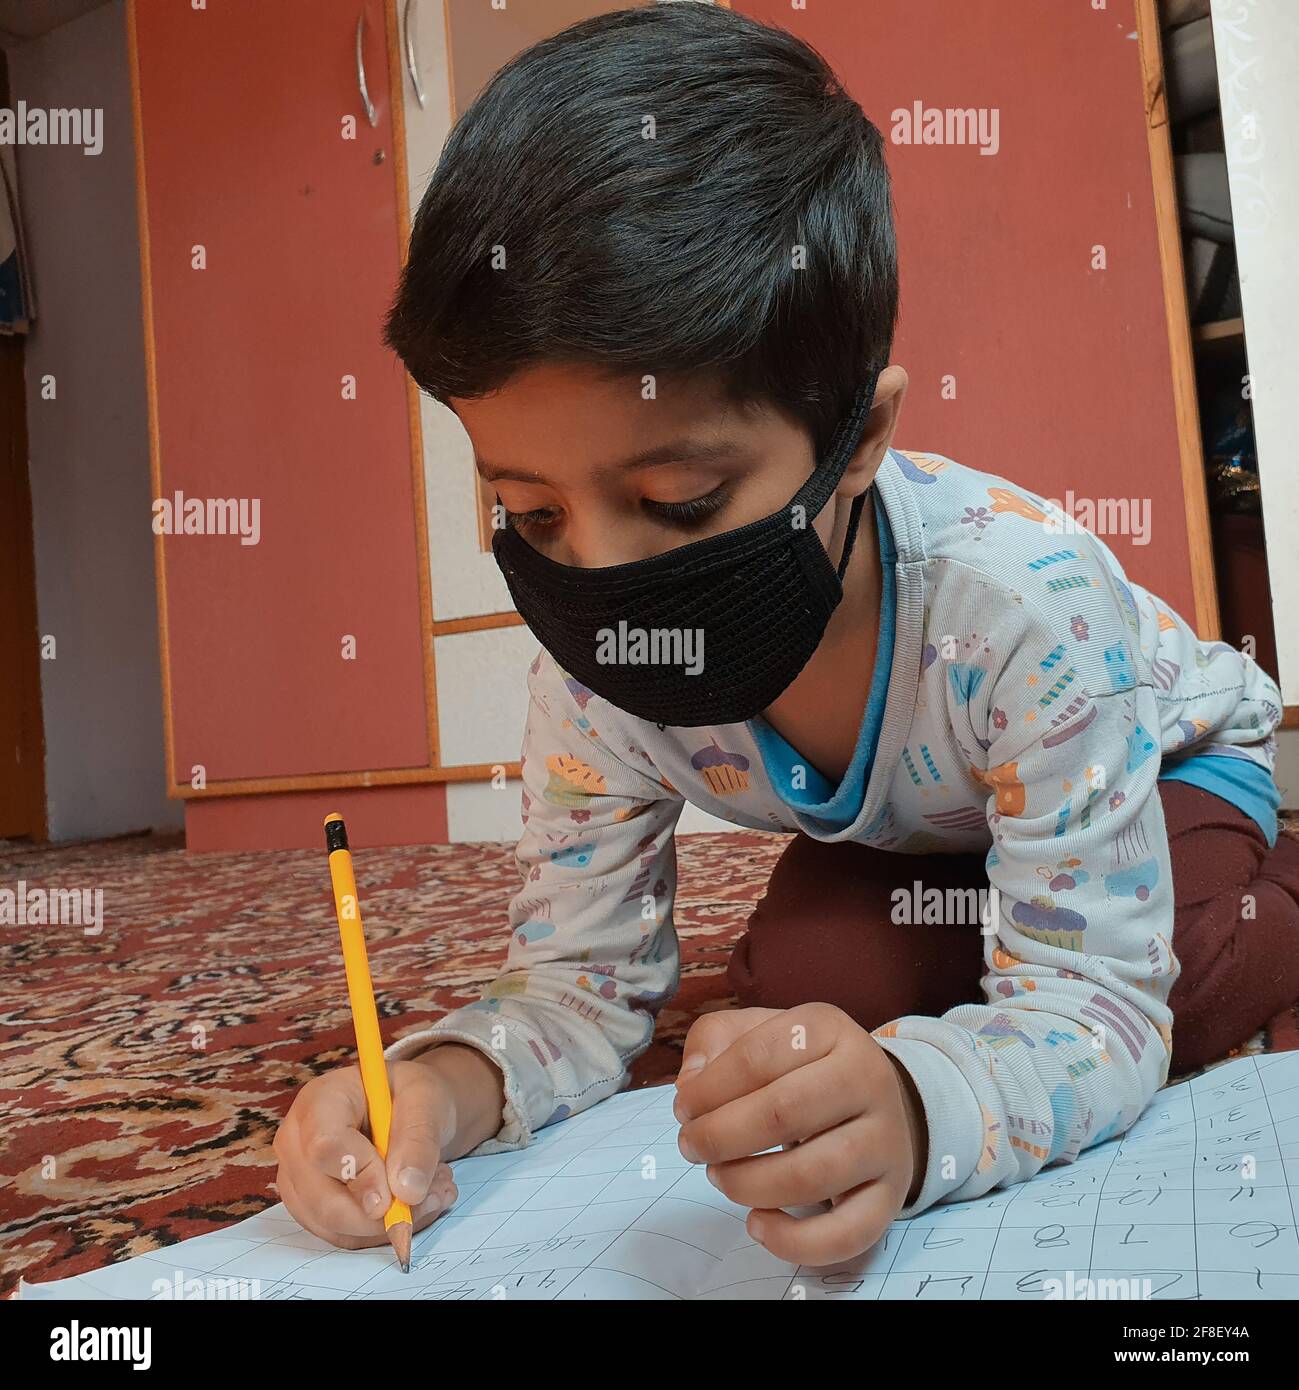 Les élèves portant des masques pour lire et écrire leur travail scolaire à la maison pendant le coronavirus pandémique. Les cours en ligne sont courants en raison de Covid 19. Banque D'Images